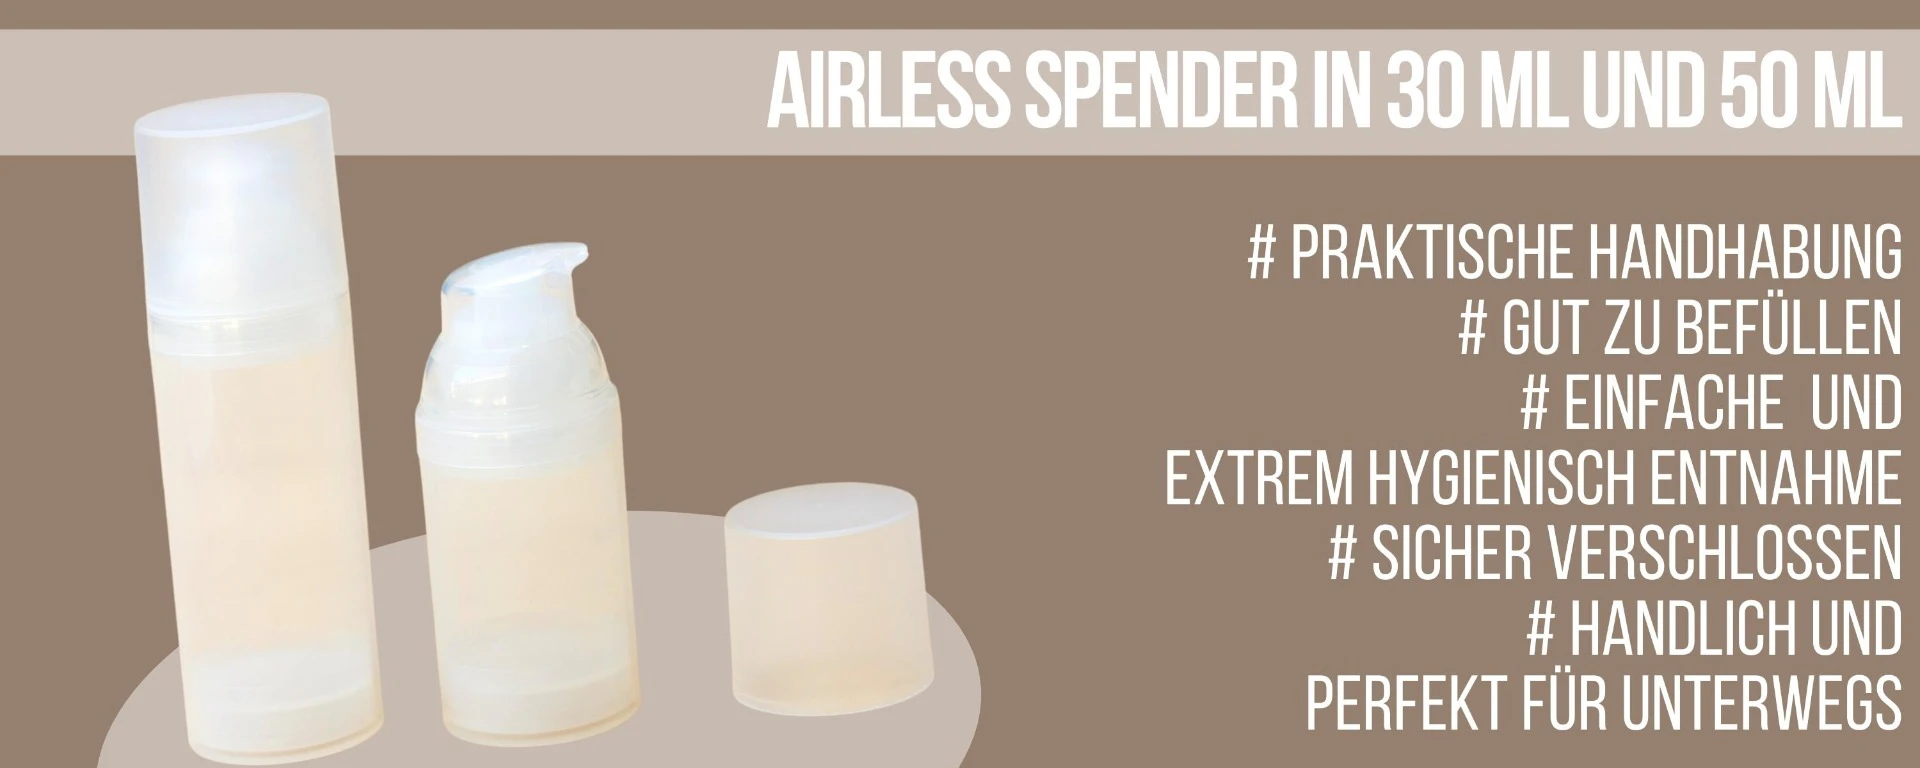 Airless Spender in 30 ml und 50 ml für eine hygienische Entnahme